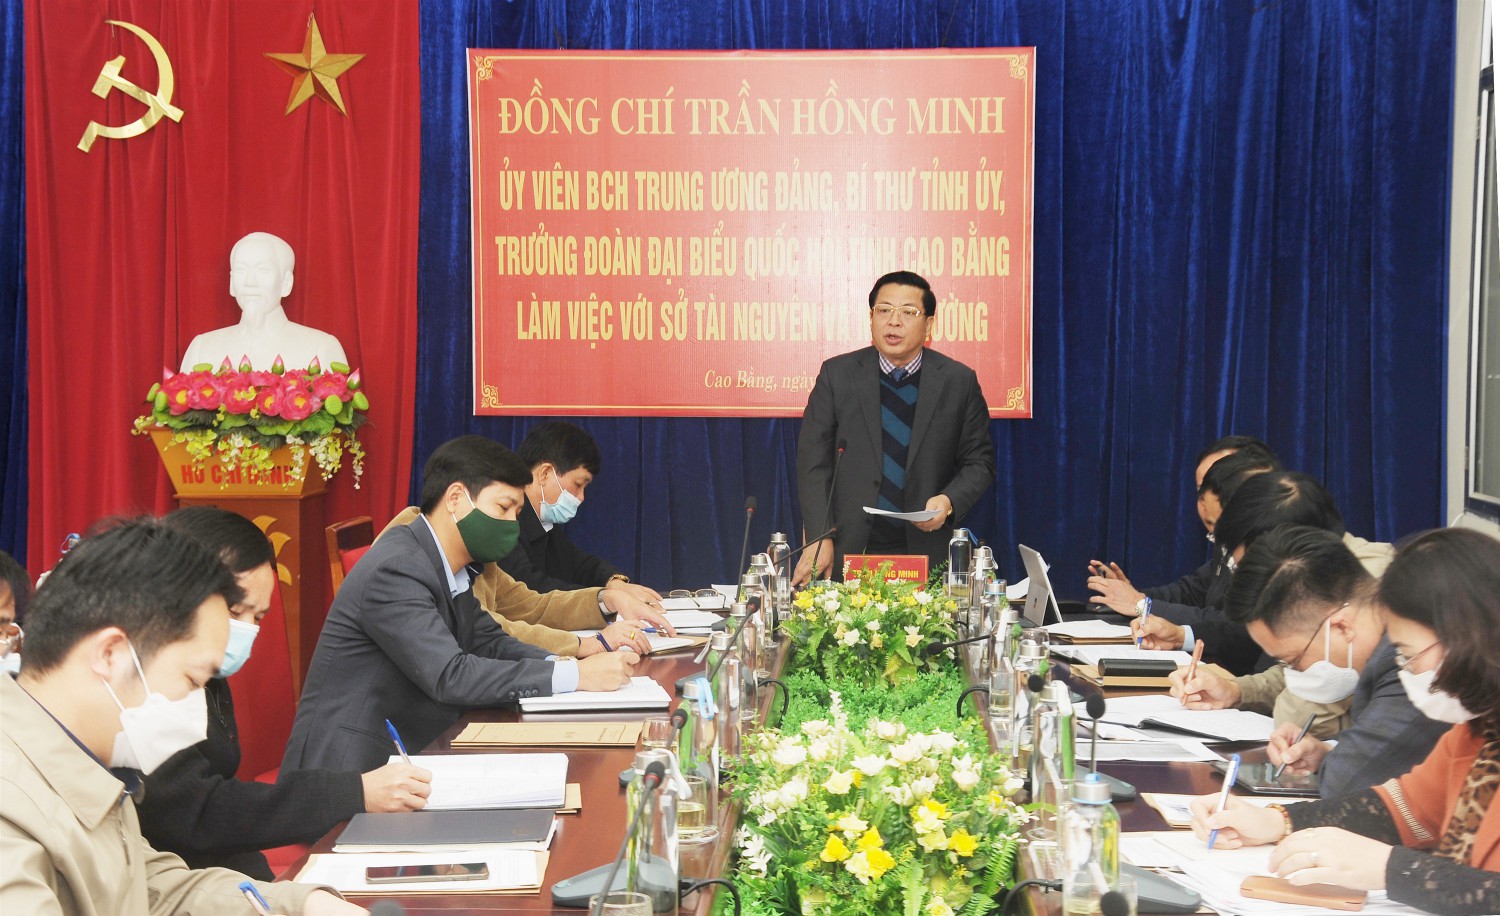 Bí thư Tỉnh ủy Trần Hồng Minh phát biểu kết luận tại buổi làm việc với Sở Tài nguyên và Môi trường.